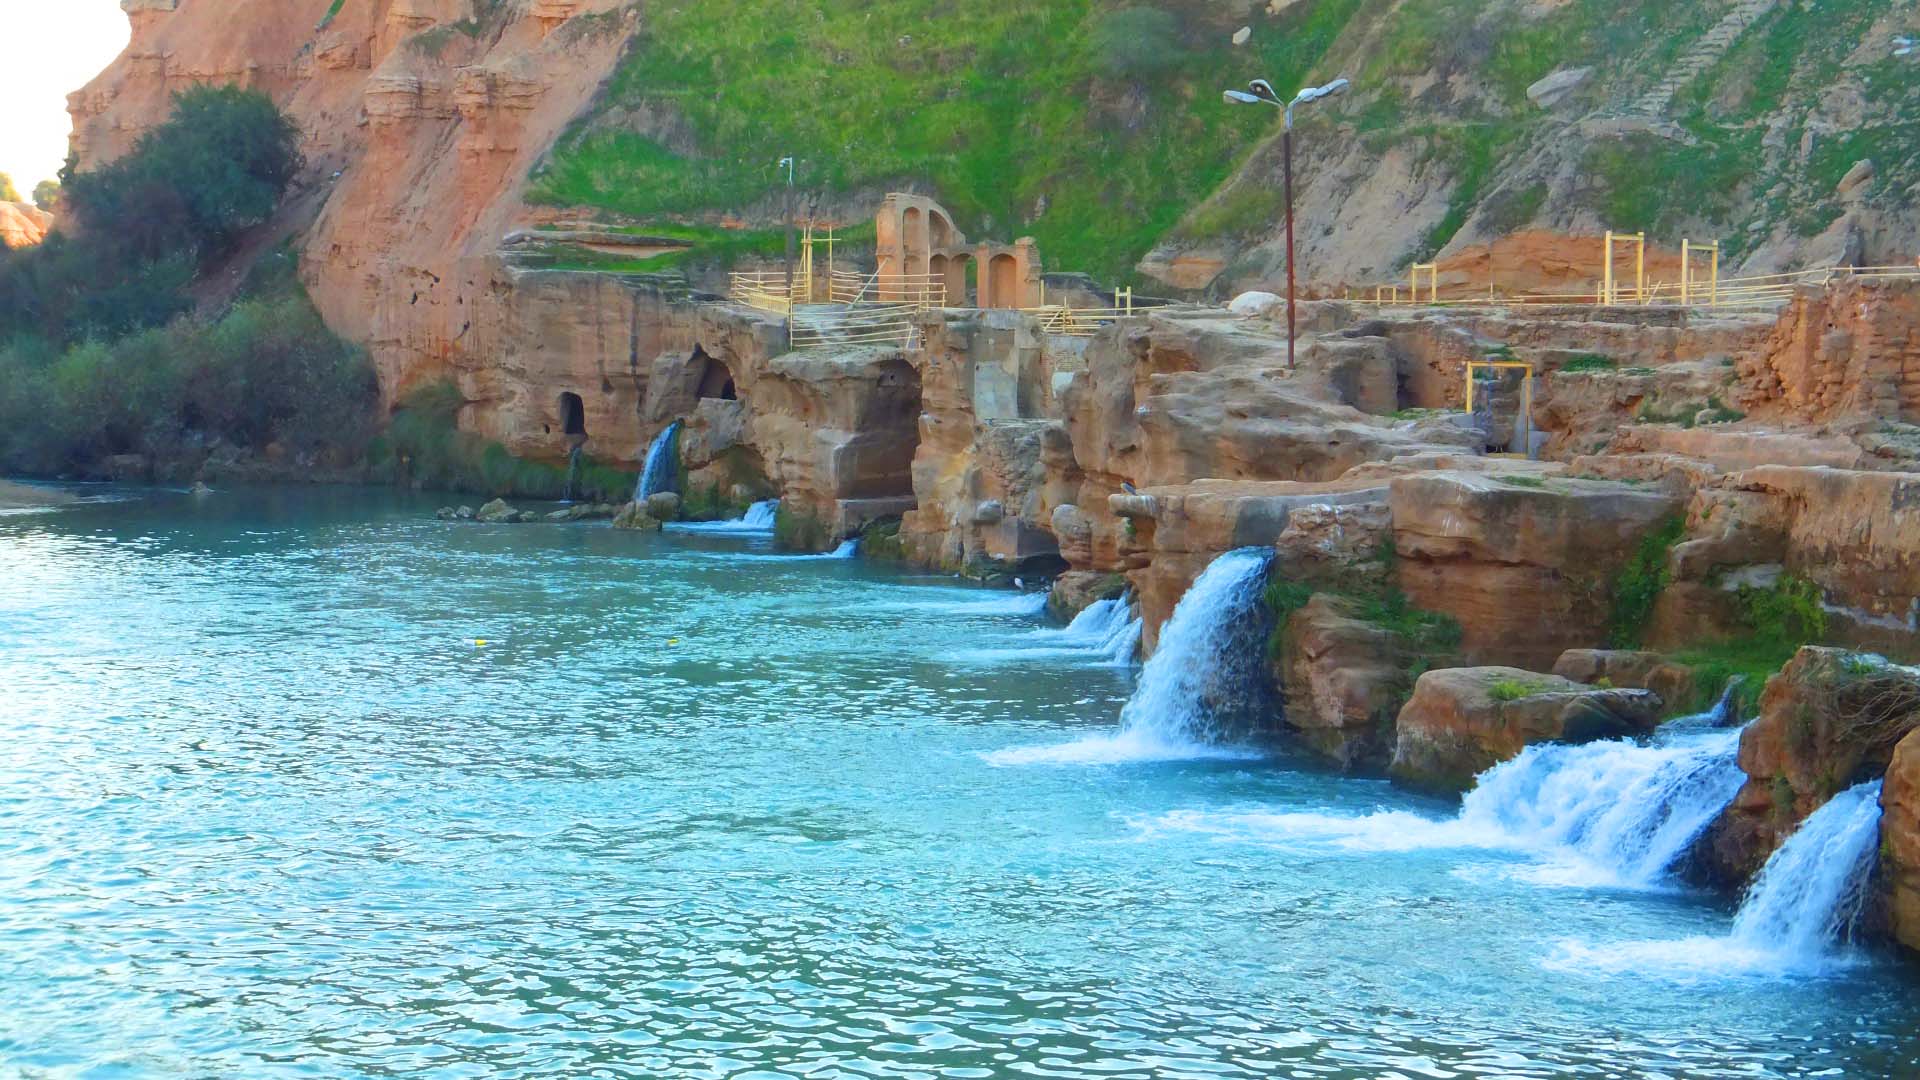 اثر ثبت جهانی آبشارهای شوشتر به روی گردشگران بازگشایی شد